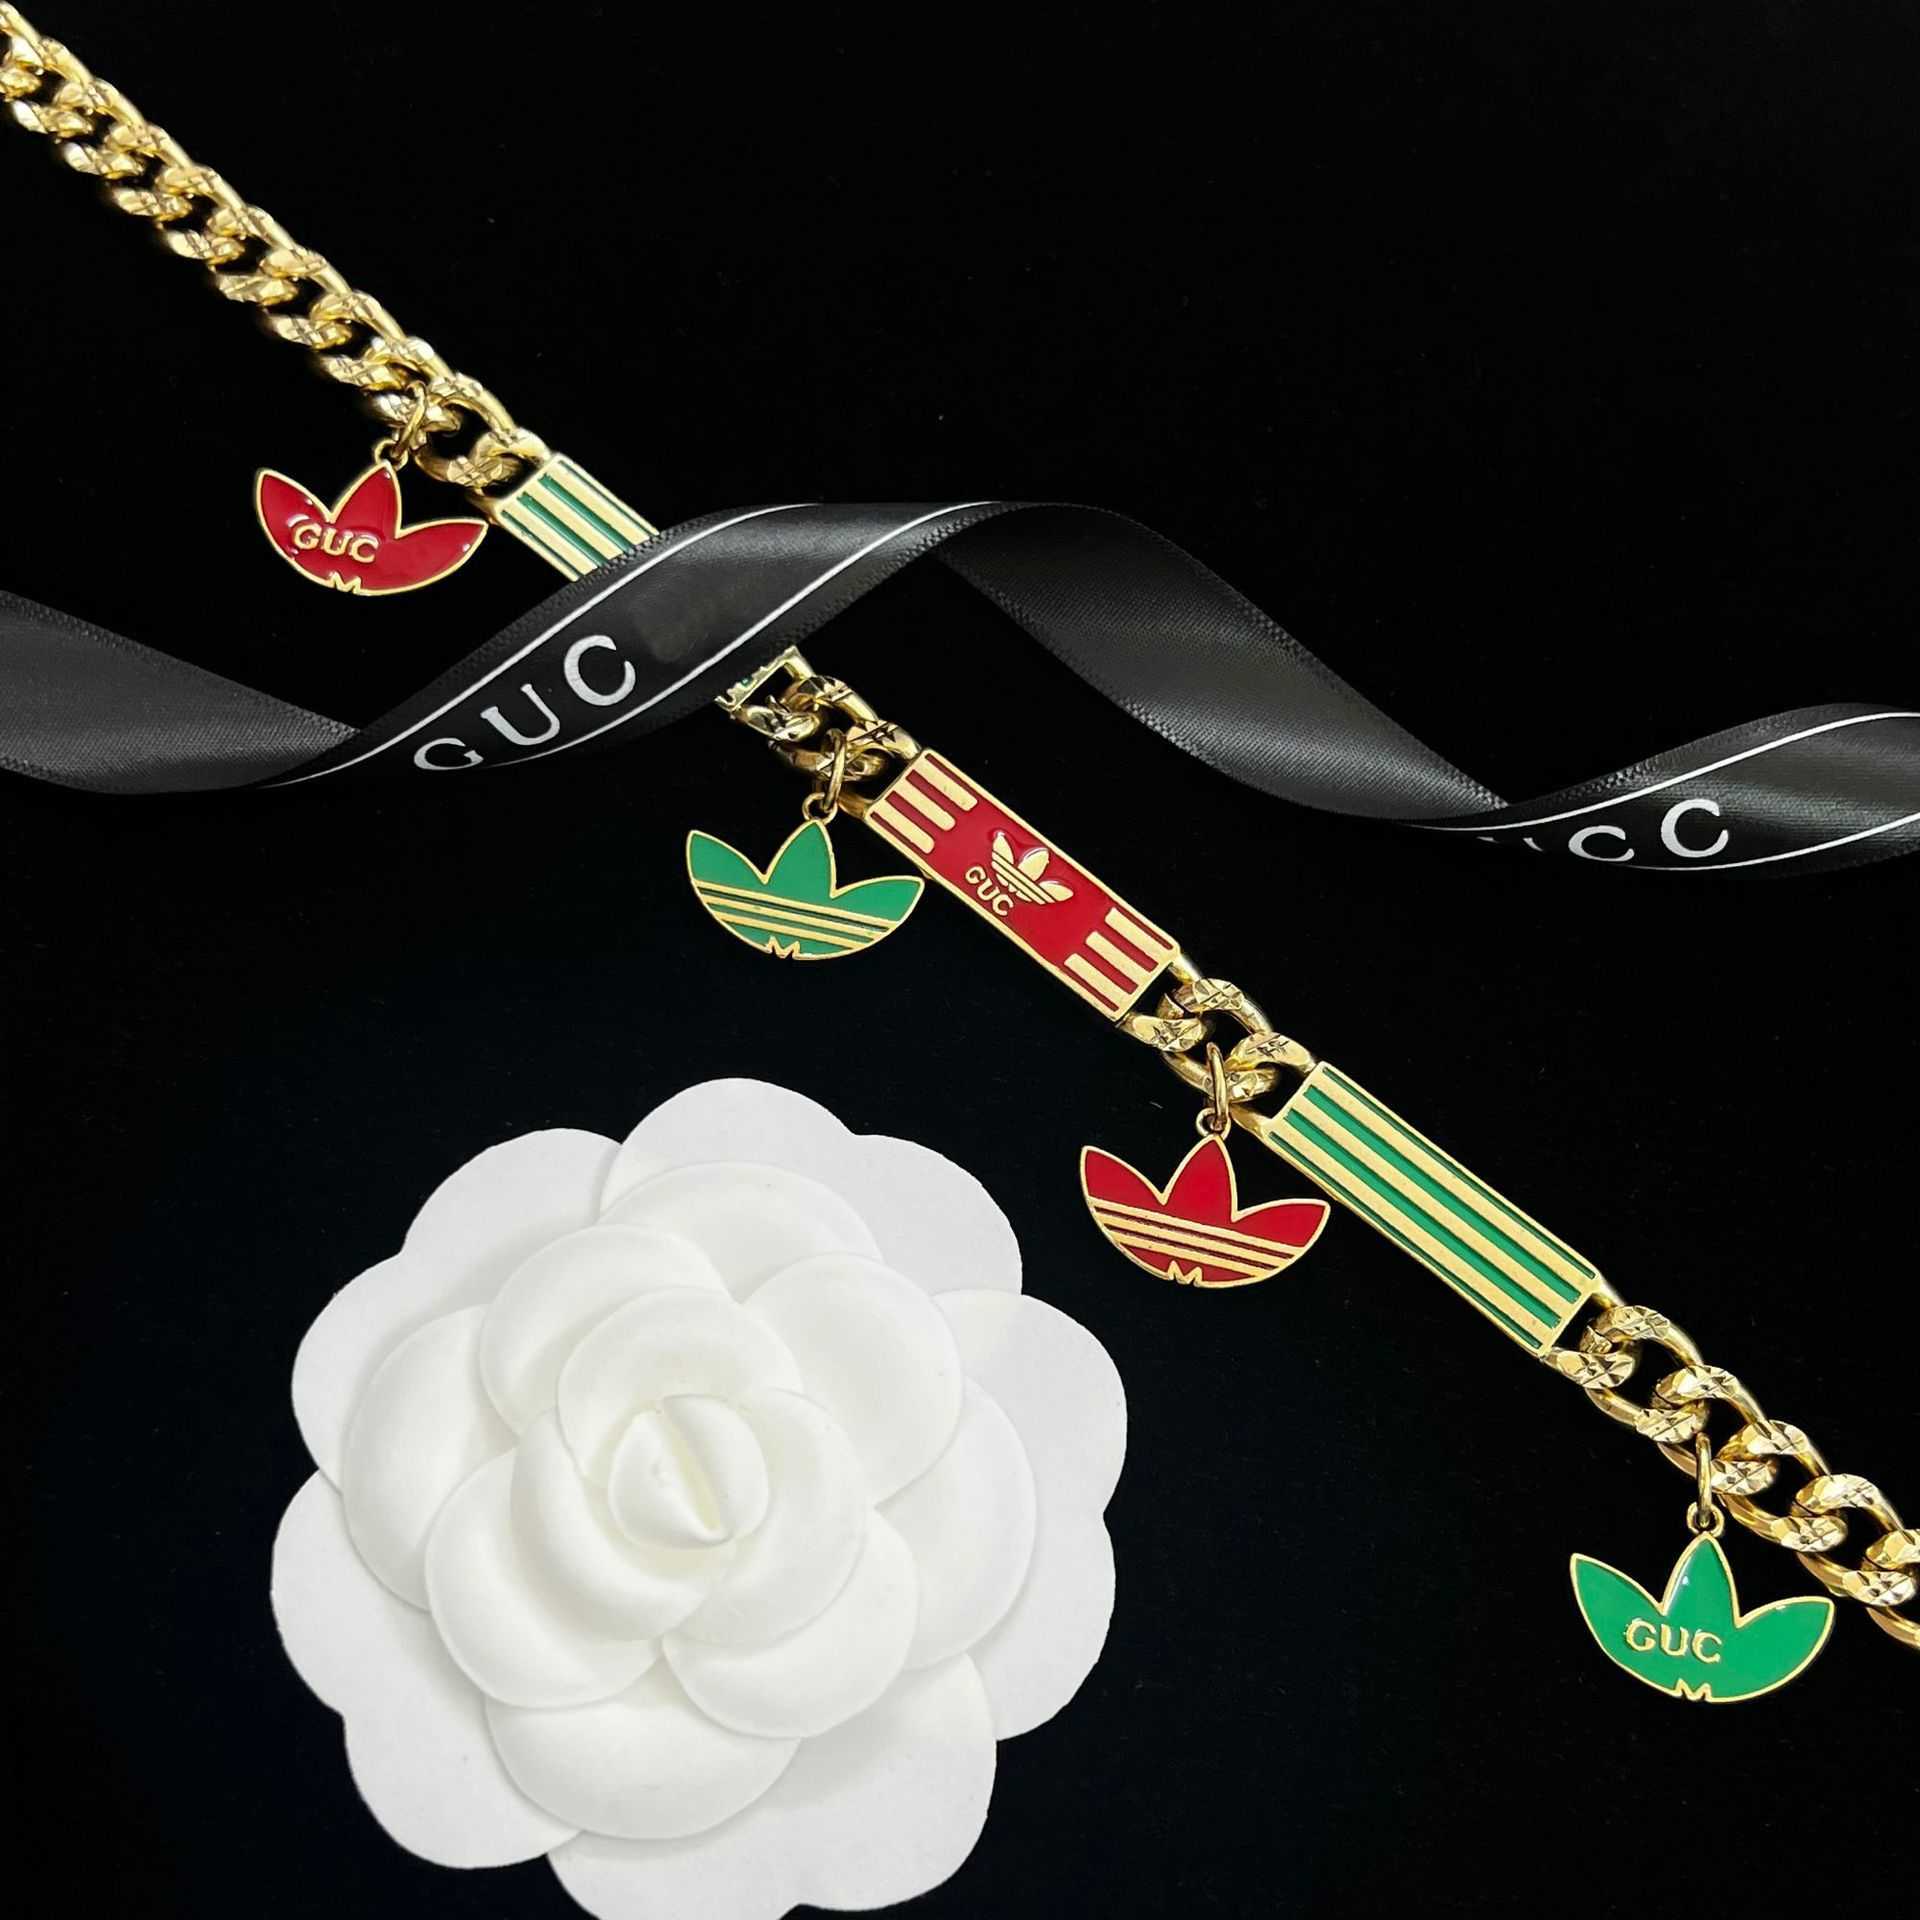 高品質の高級ジュエリーファミリーの女性の鎖骨チェーンによってデザインされた高品質の韓国のネックレスはシンプルで多用途です